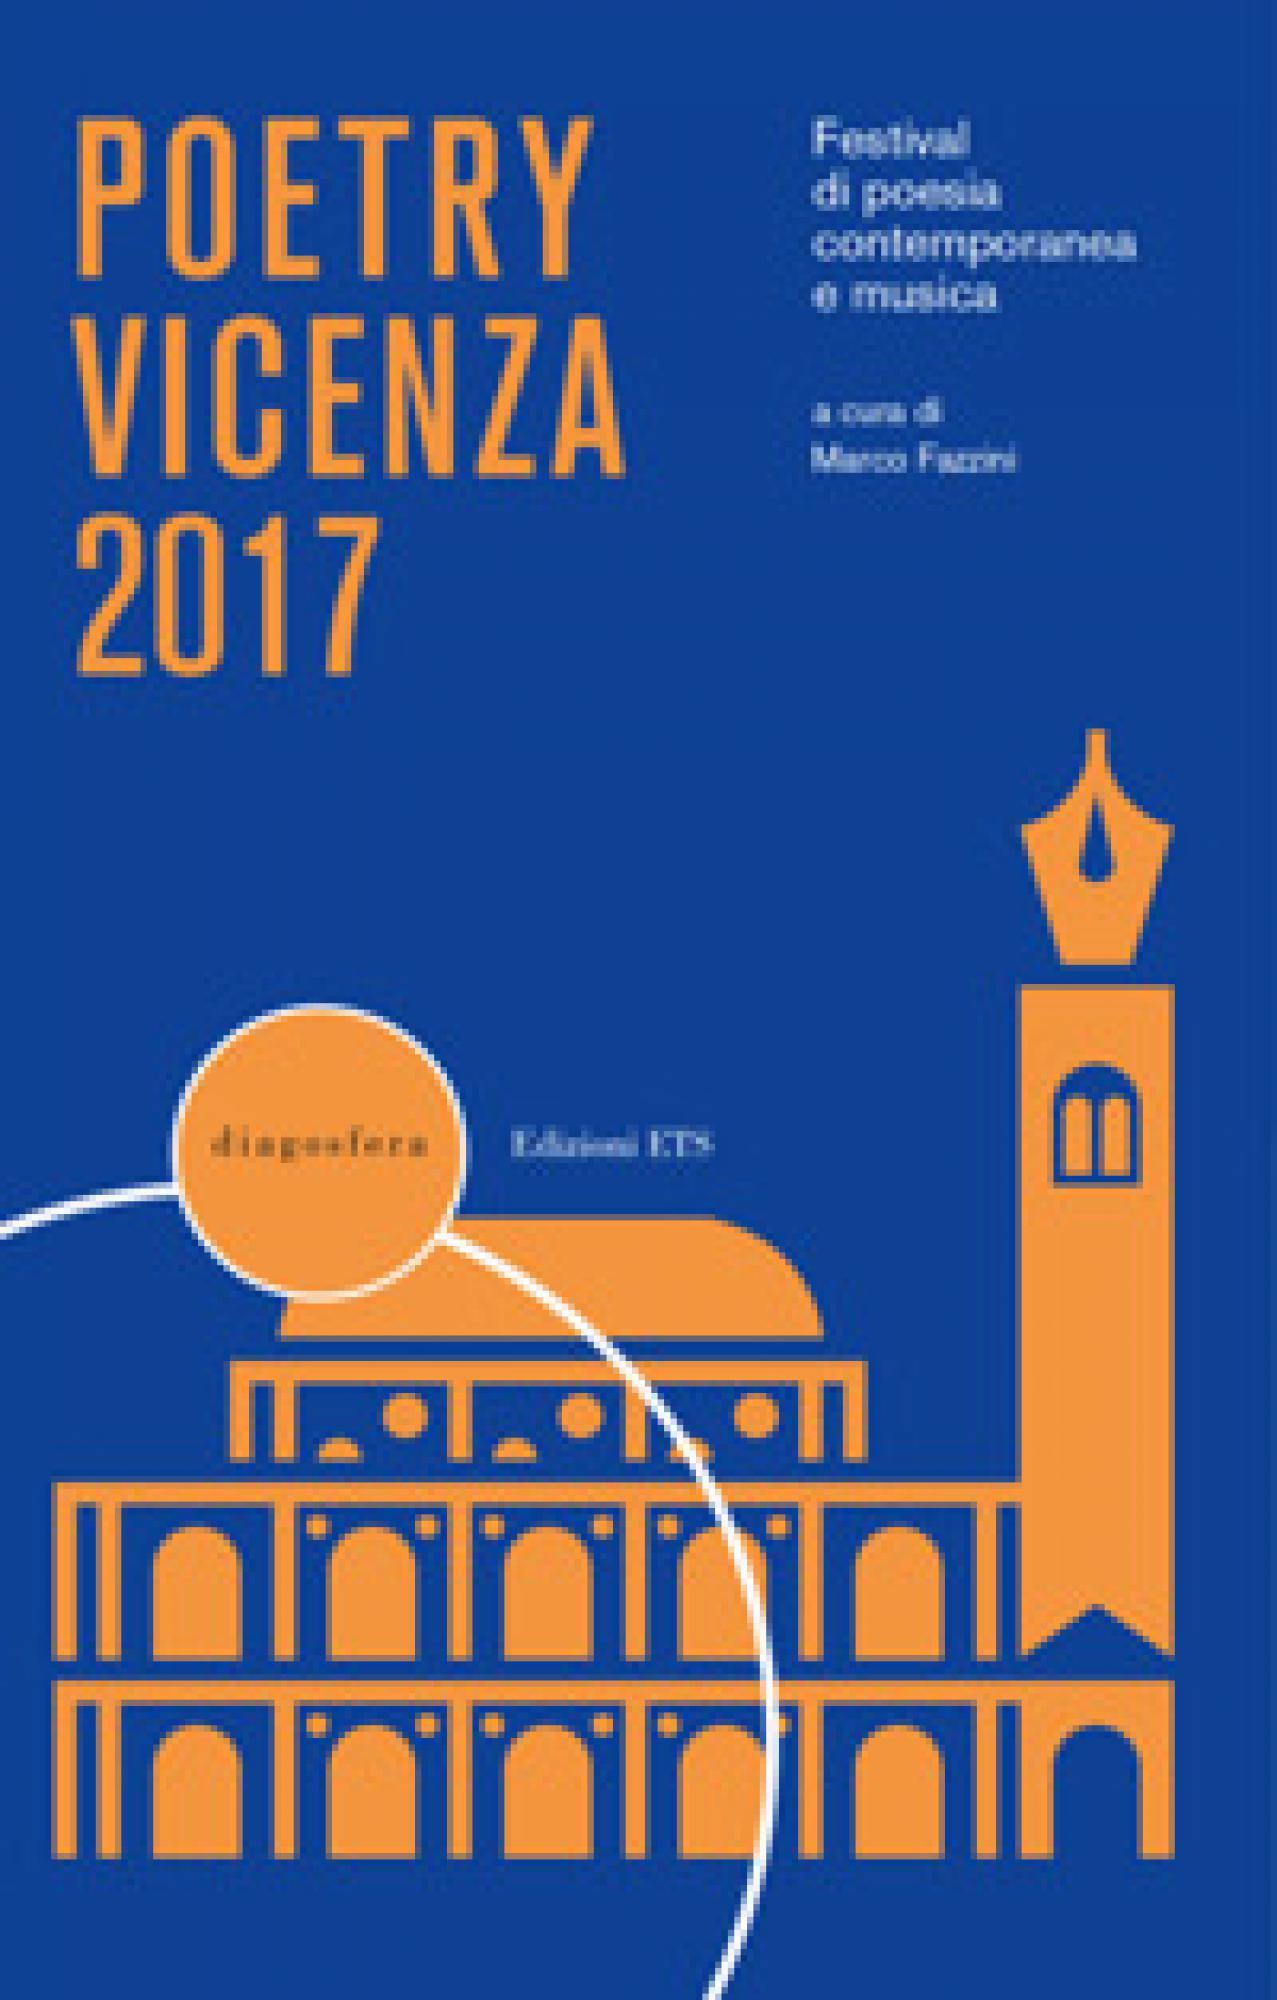 Poetry Vicenza 2017.Festival di poesia contemporanea e musica